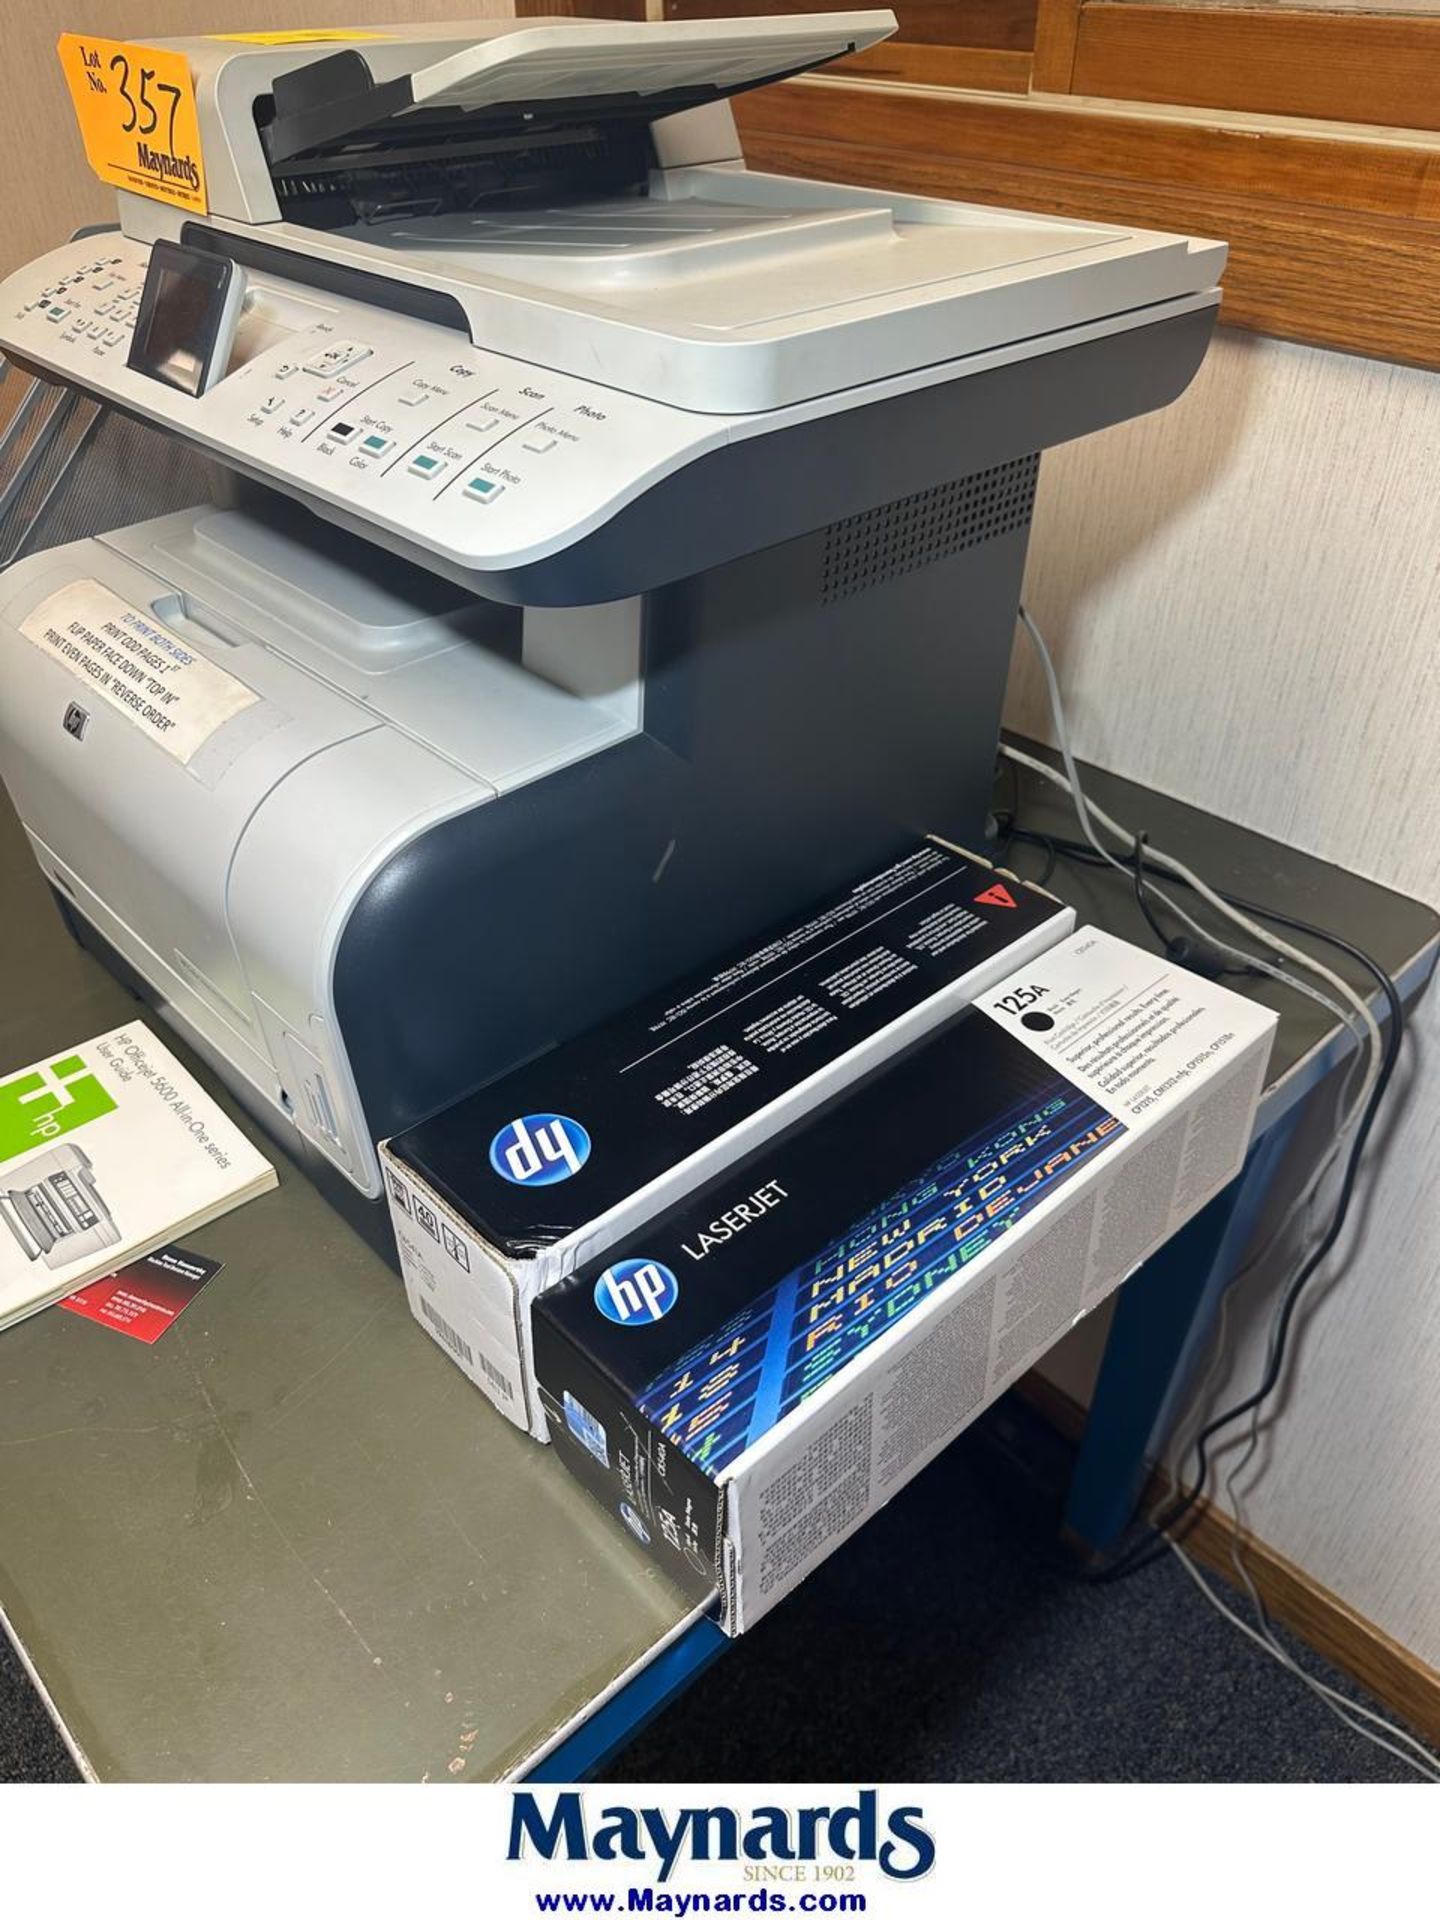 HP Color LaserJet CM1312nfi MFP Color Printer/Copier/Fax Machine - Image 2 of 6